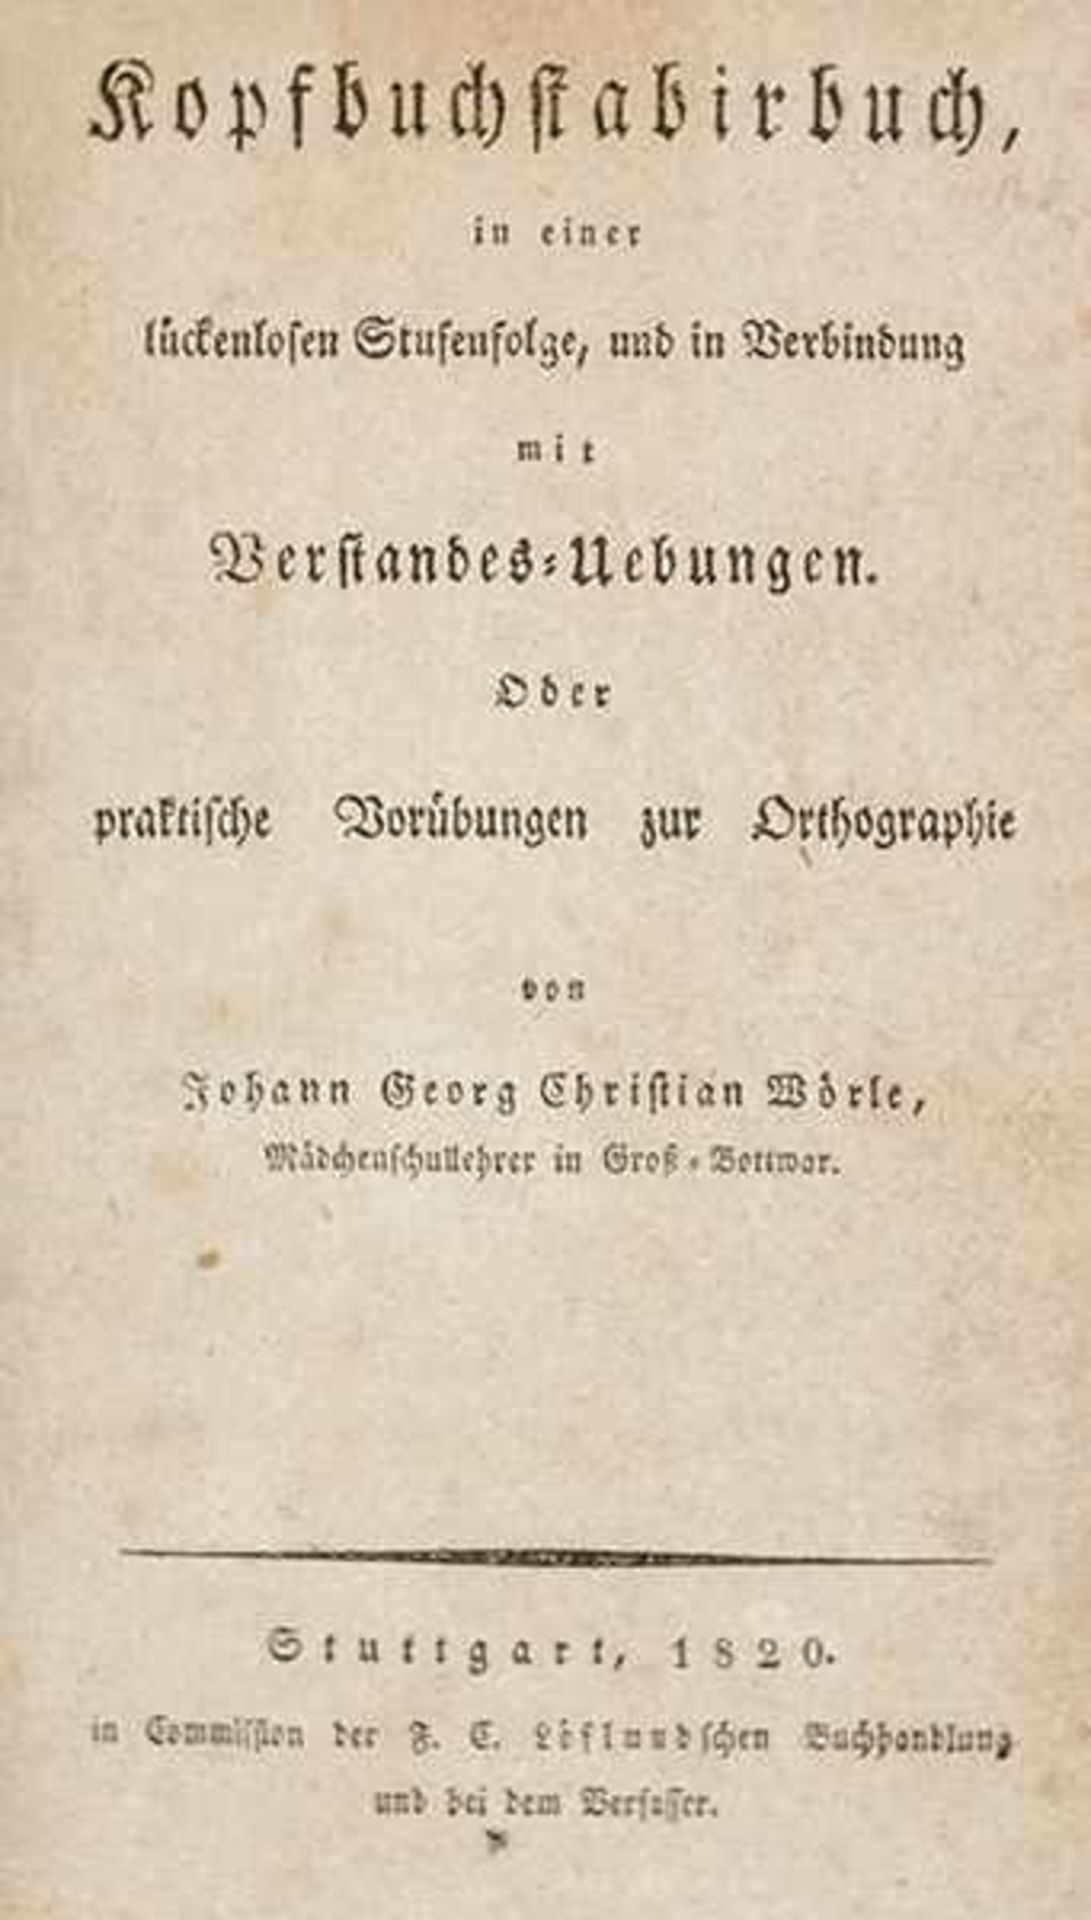 Wörle, Johann Georg Christian. Kopfbuchstabirbuch in einer lückenlosen Stufenfolge, und in